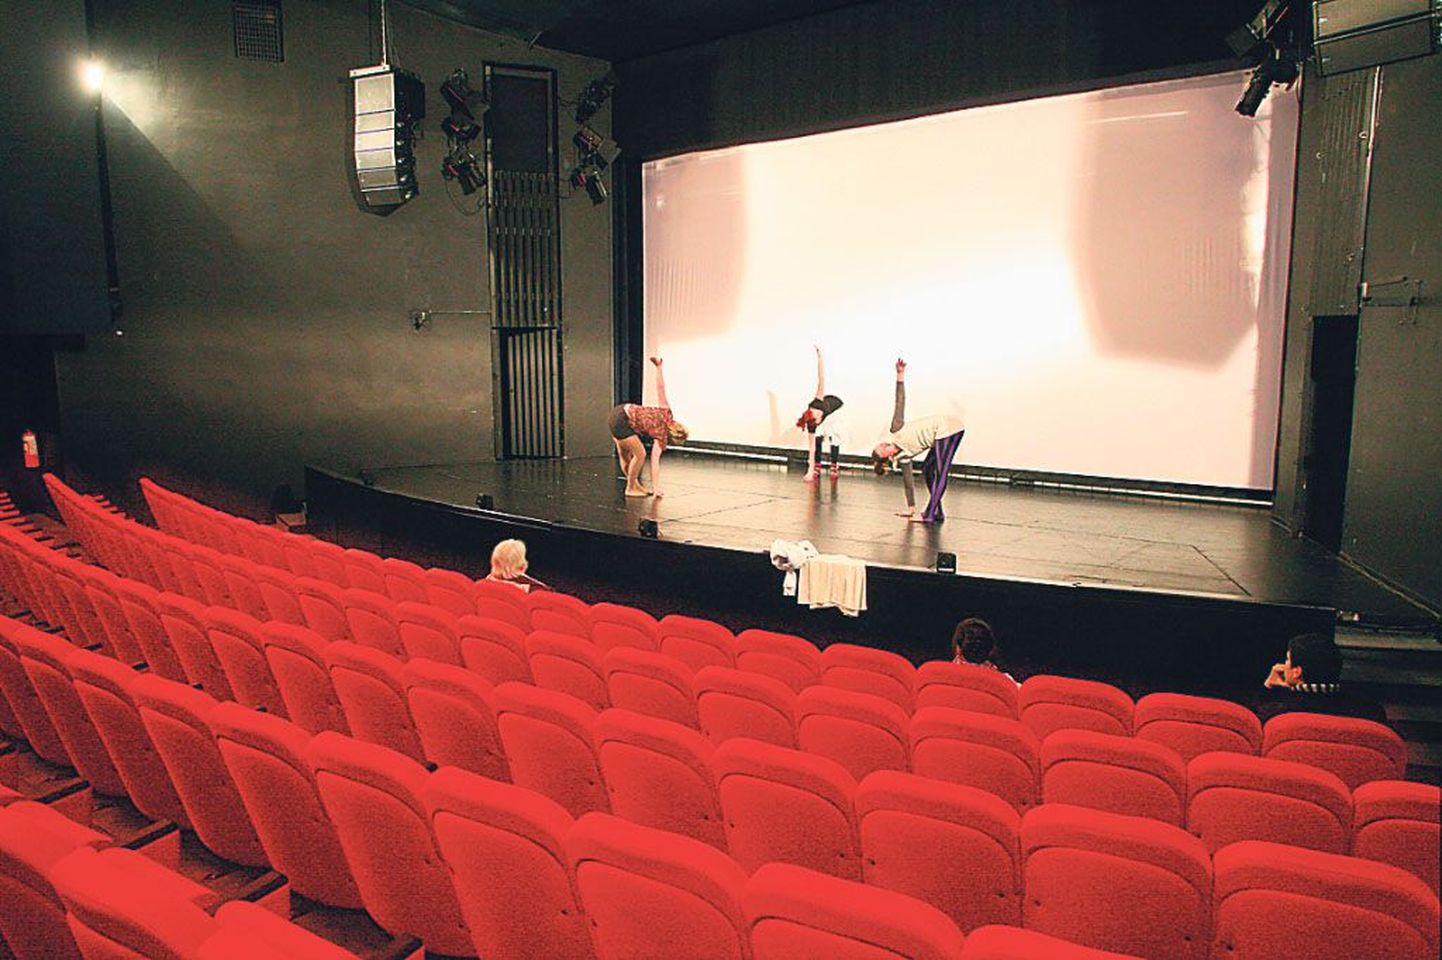 Firma Stumpfl 9,5 x 7 meetrit suur ekraan katab Endla lava ava täielikult, nii et seda saab kasutada vaid teatrikino seanssidel.